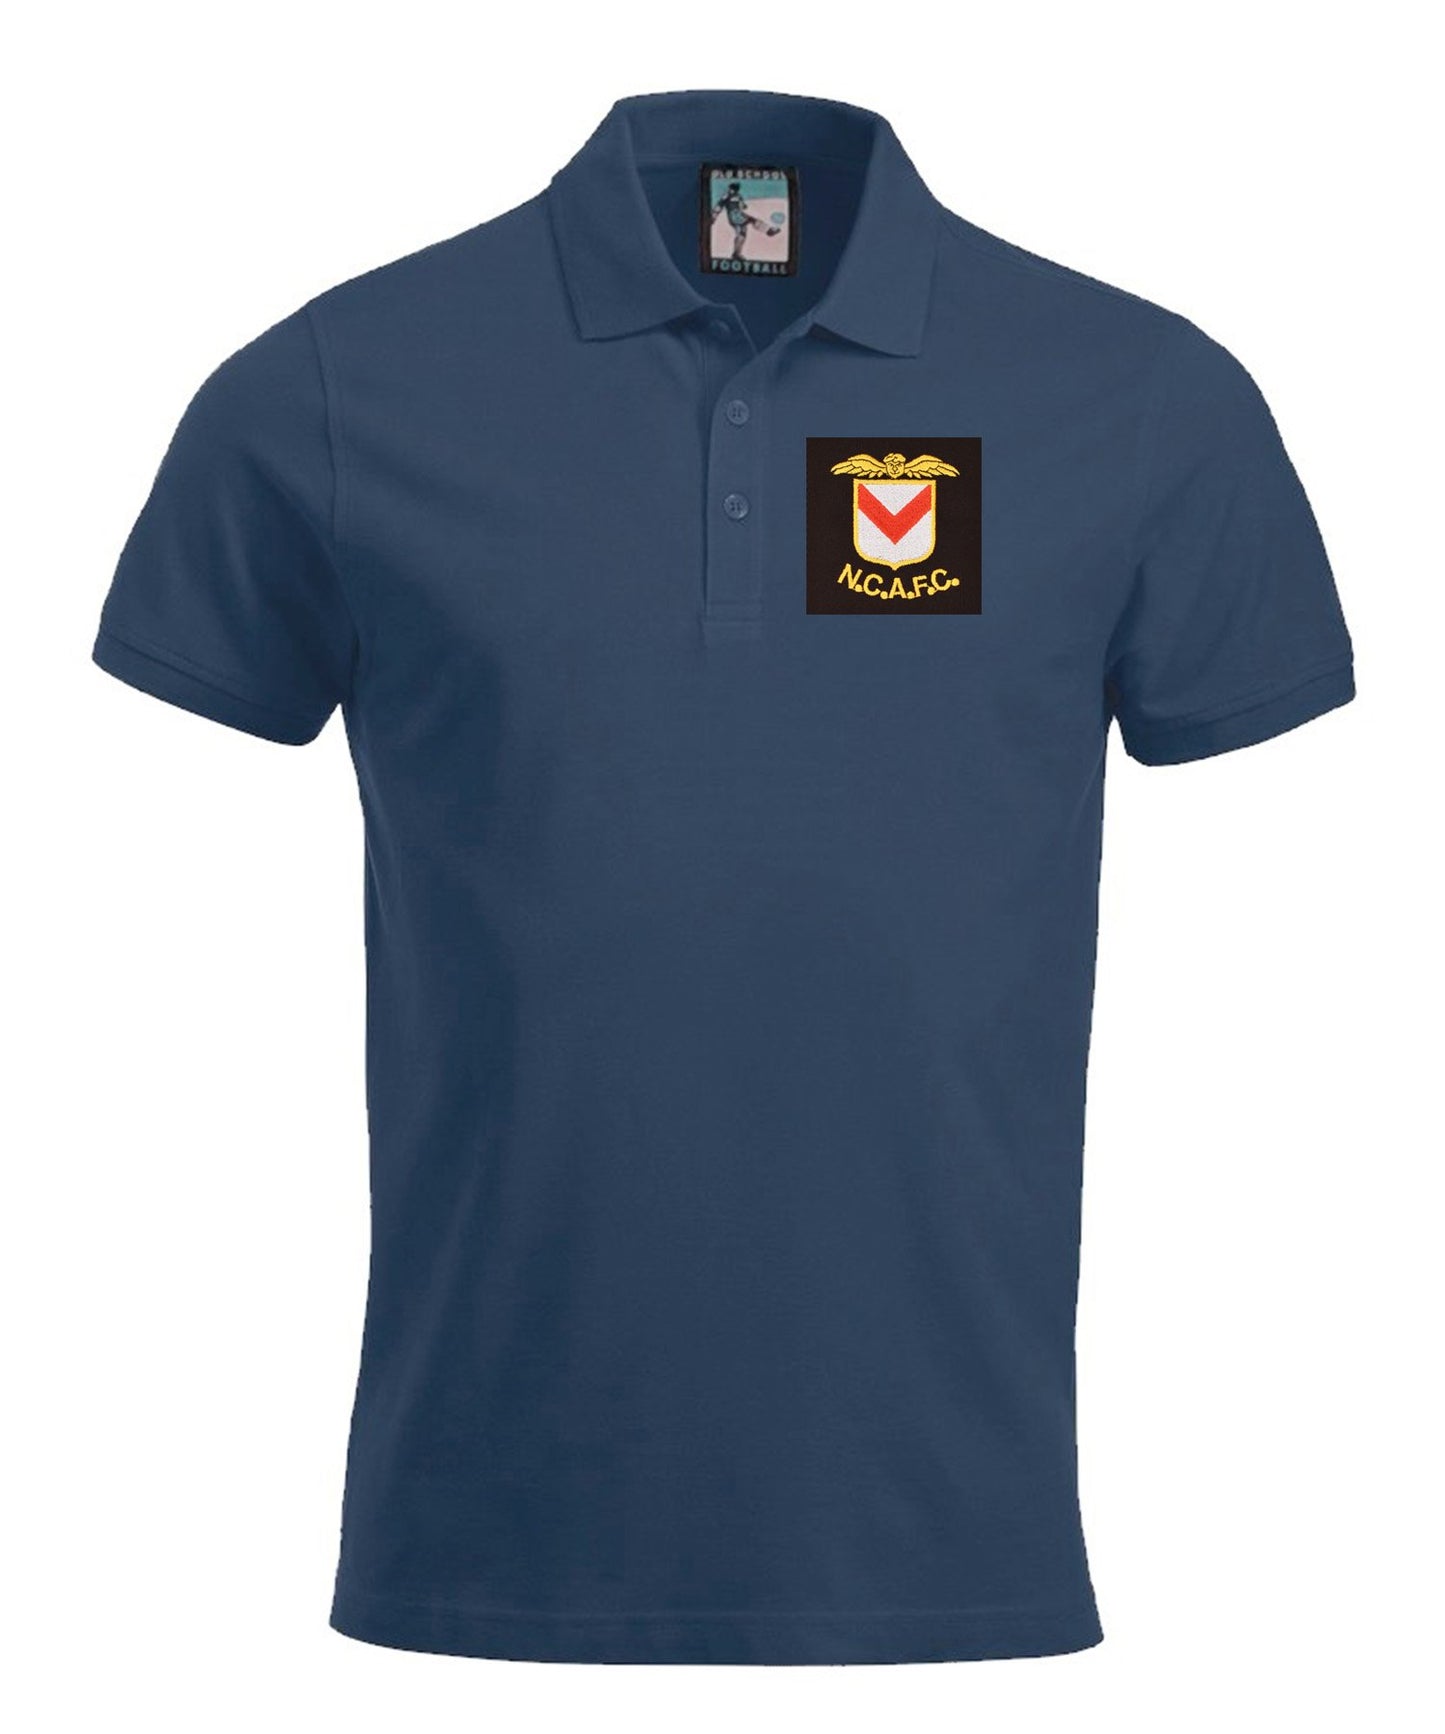 Newport County Retro 1960s Football Polo Shirt - Polo